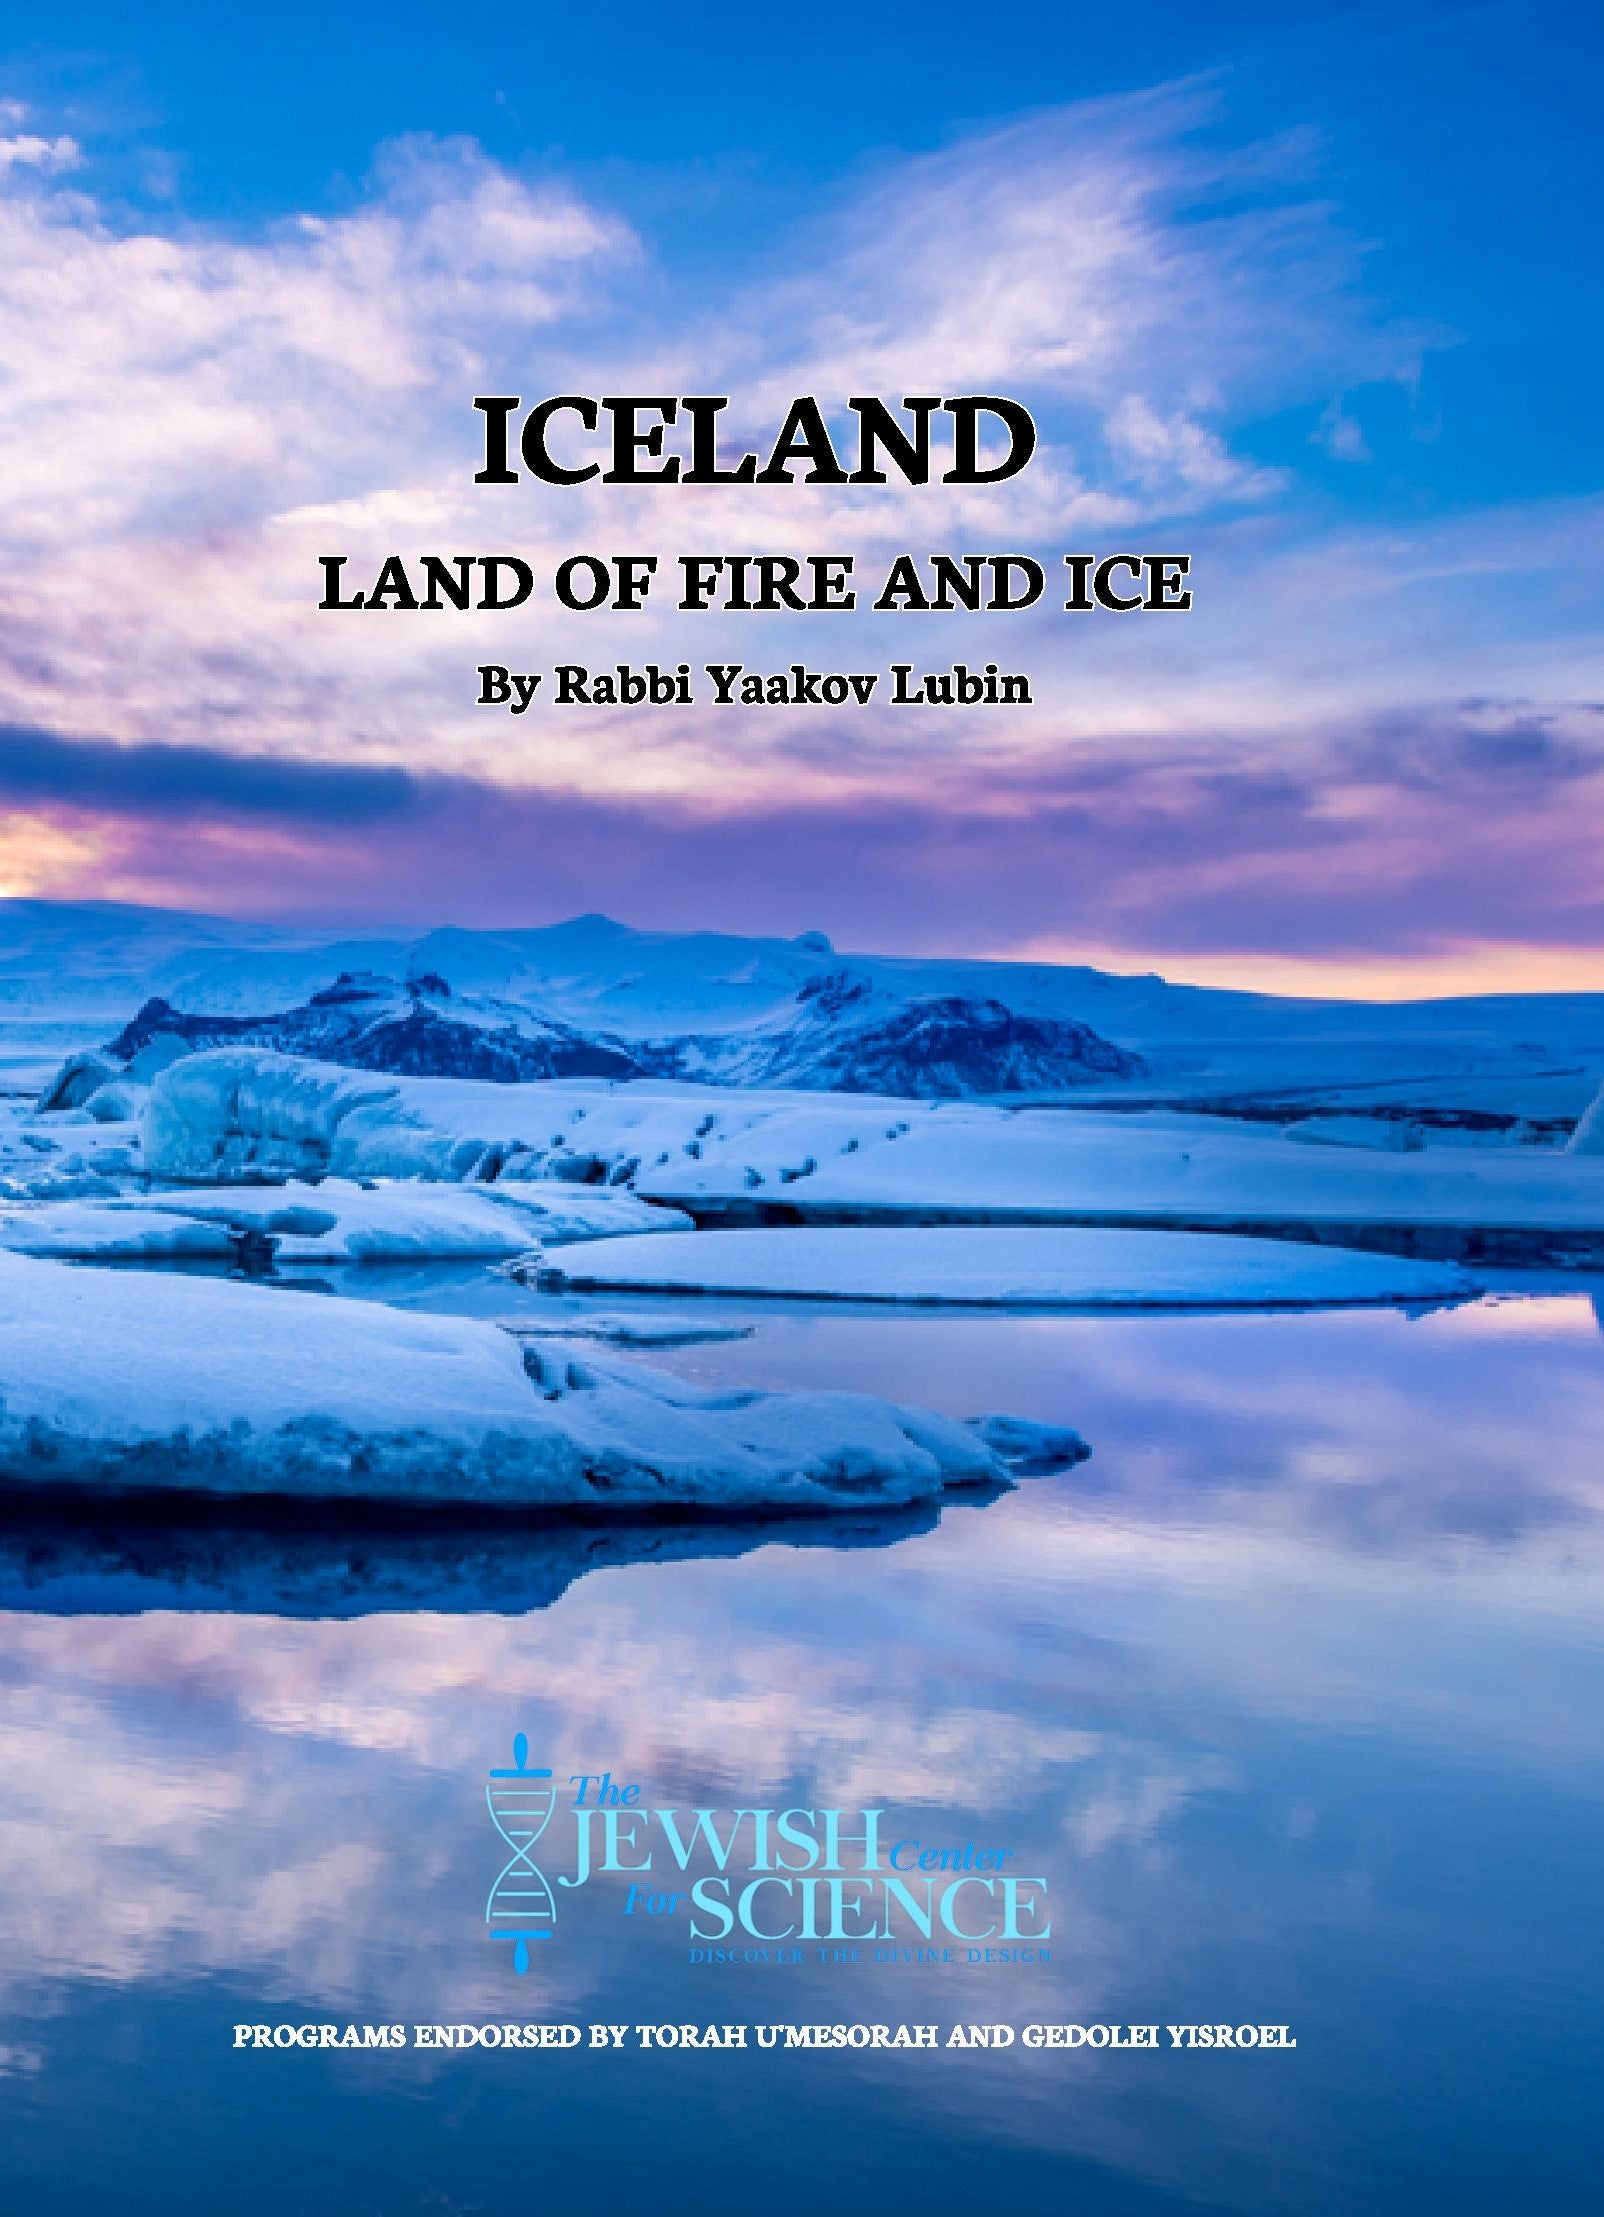 סדרת בורצ'י נפשי - איסלנד "ארץ האש והקרח" (וידאו) 